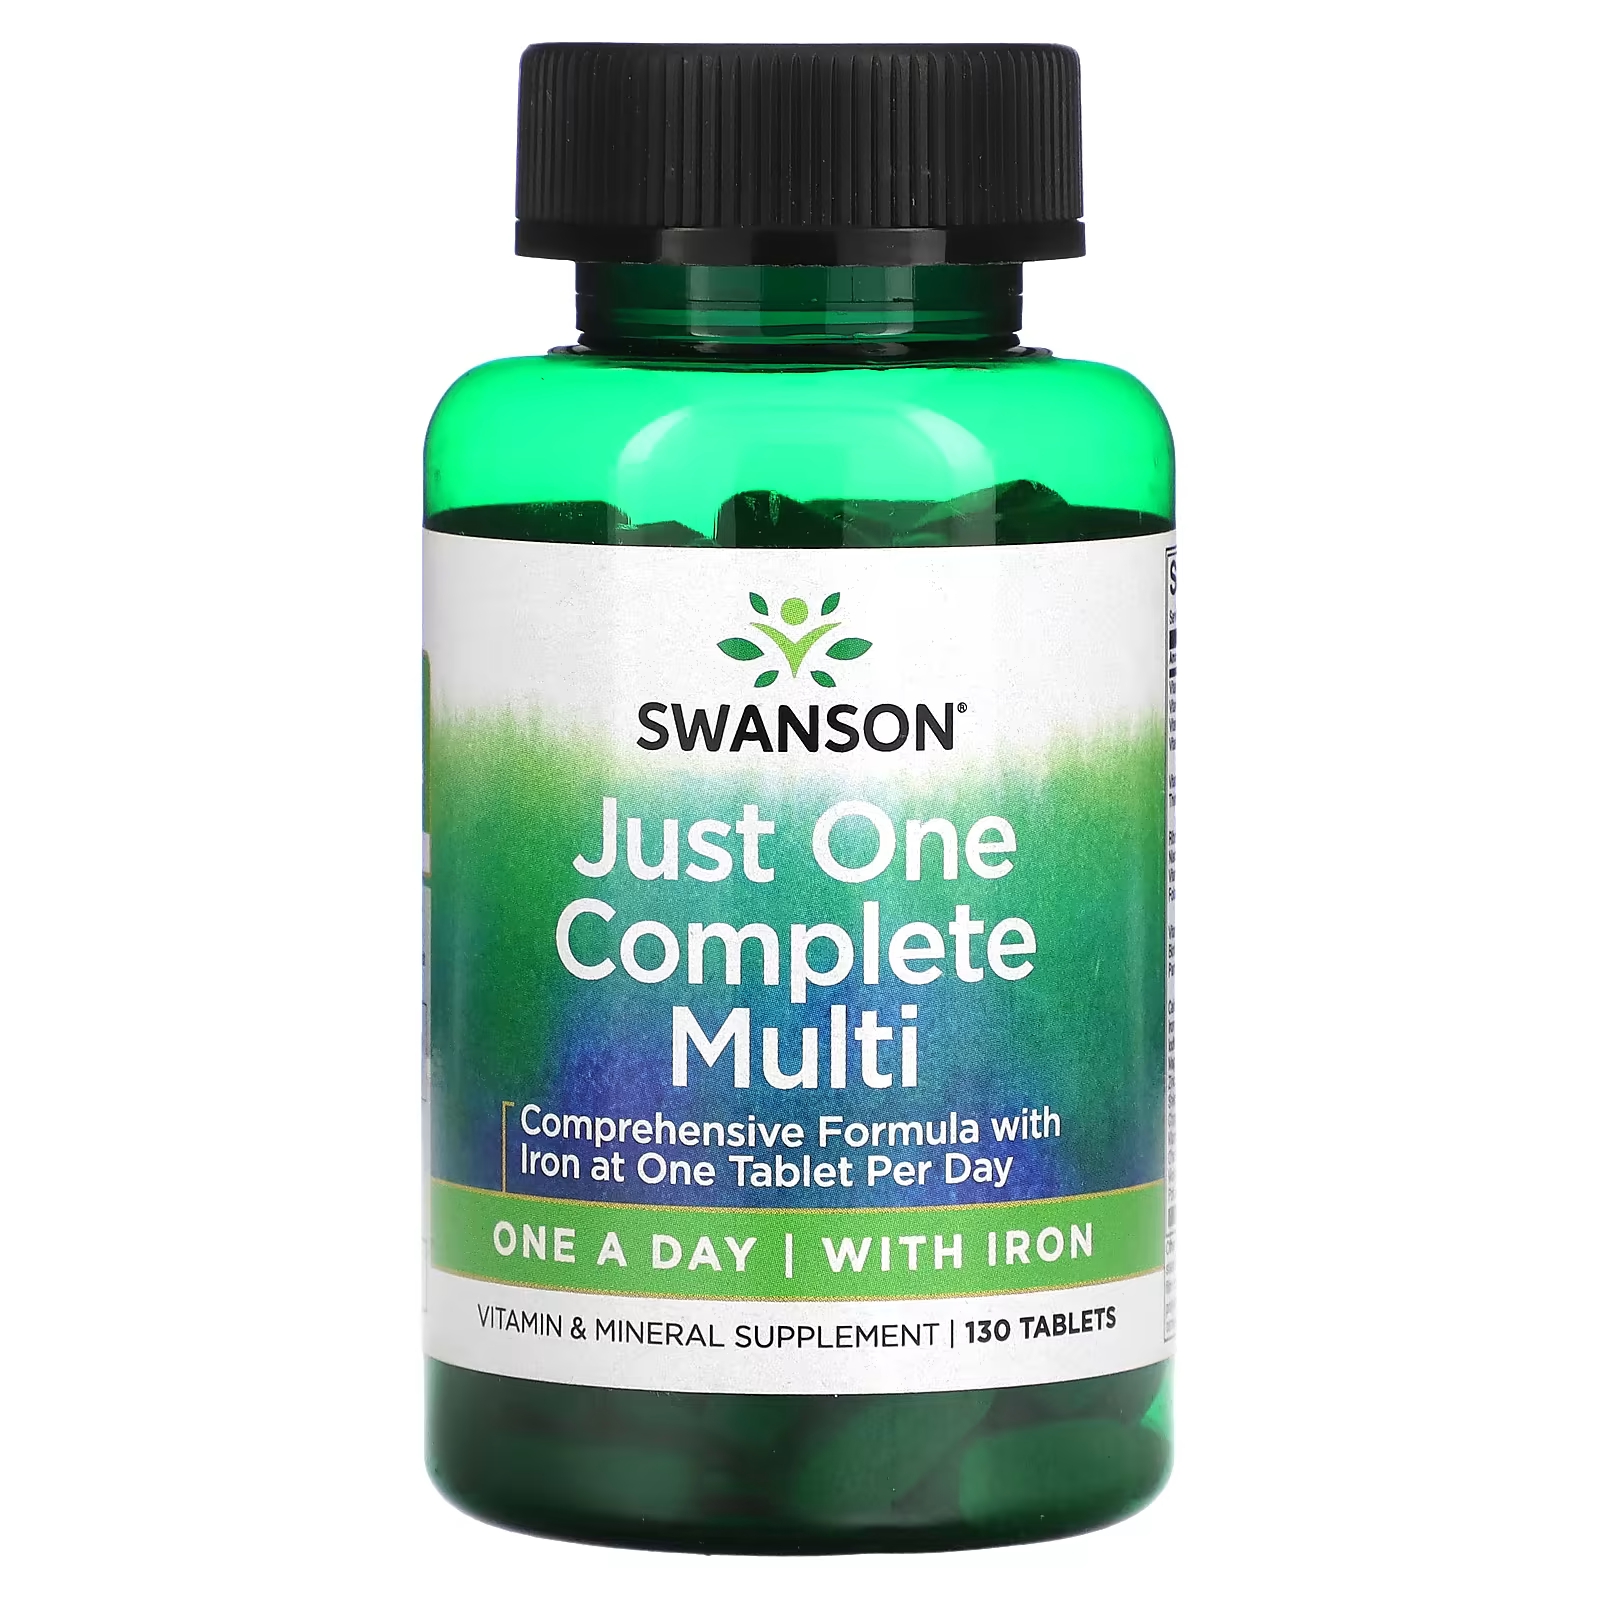 Мультивитамины Swanson Just One Complete Multi с железом swanson multi plus immune support с железом высокая эффективность 120 мягких таблеток